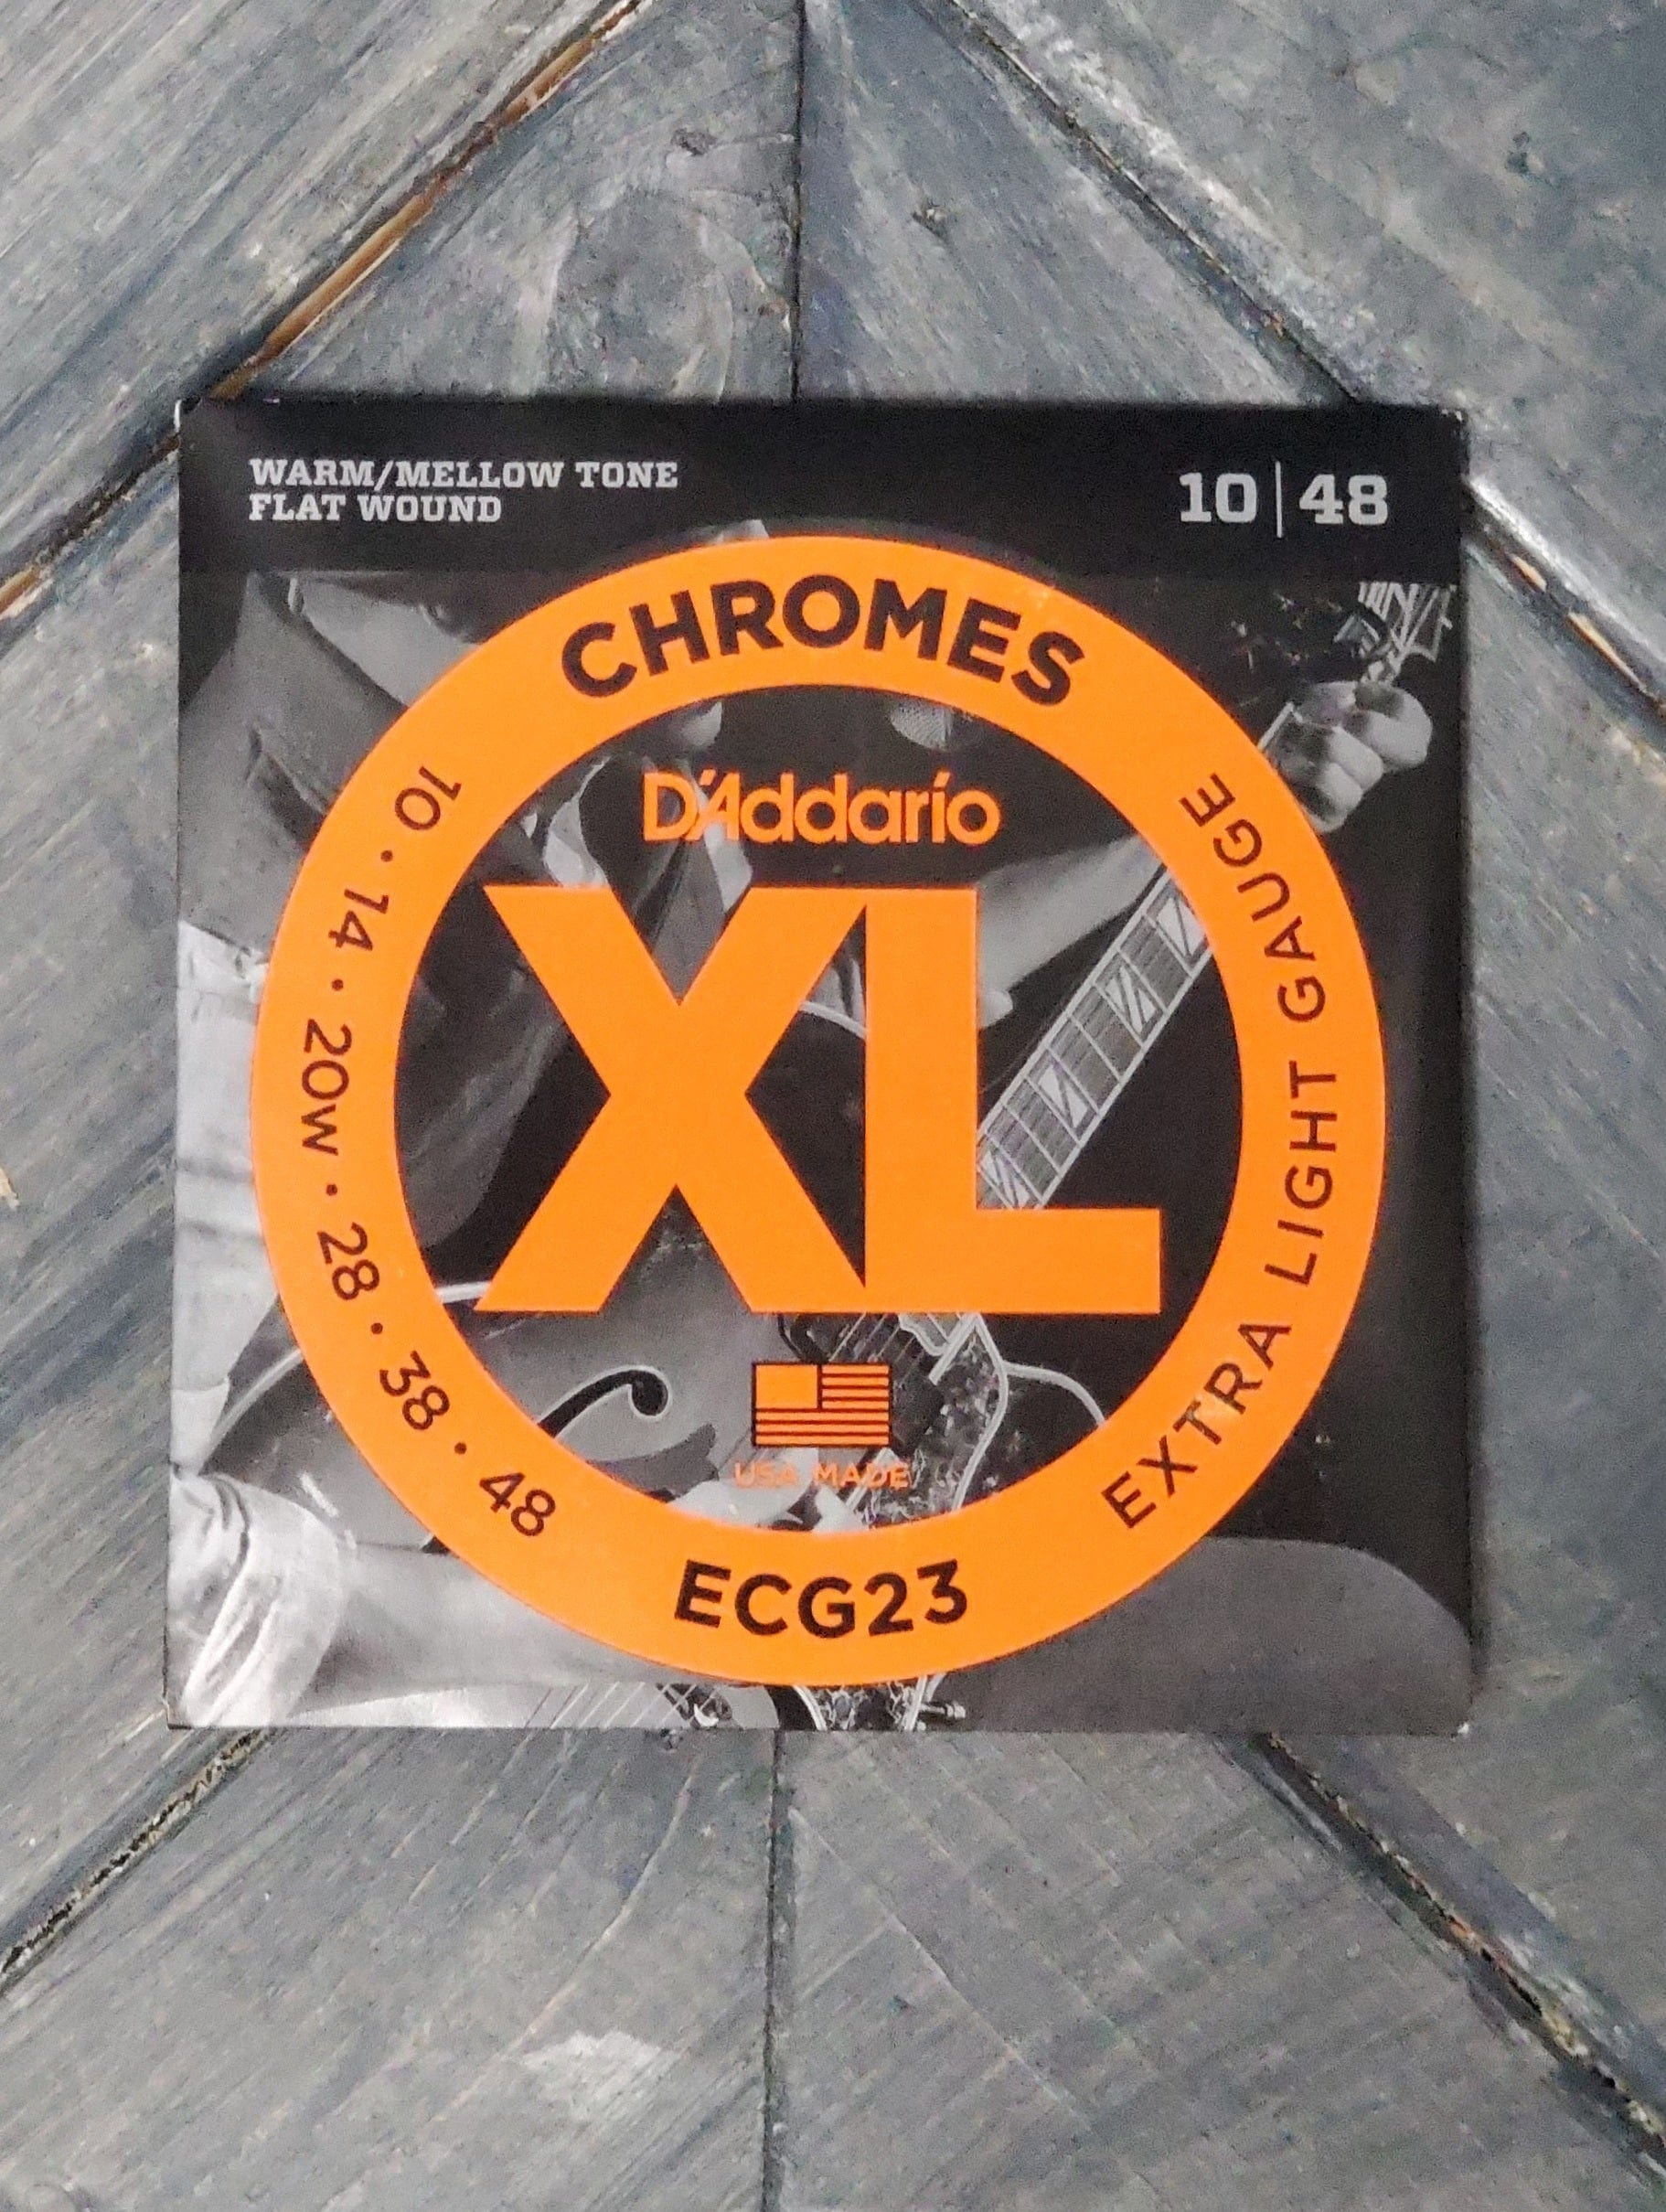 Accessoire pour guitare D'Addario 3DBK7-10 - 10 Médiators en nylon, noir  Ice – Extra-heavy